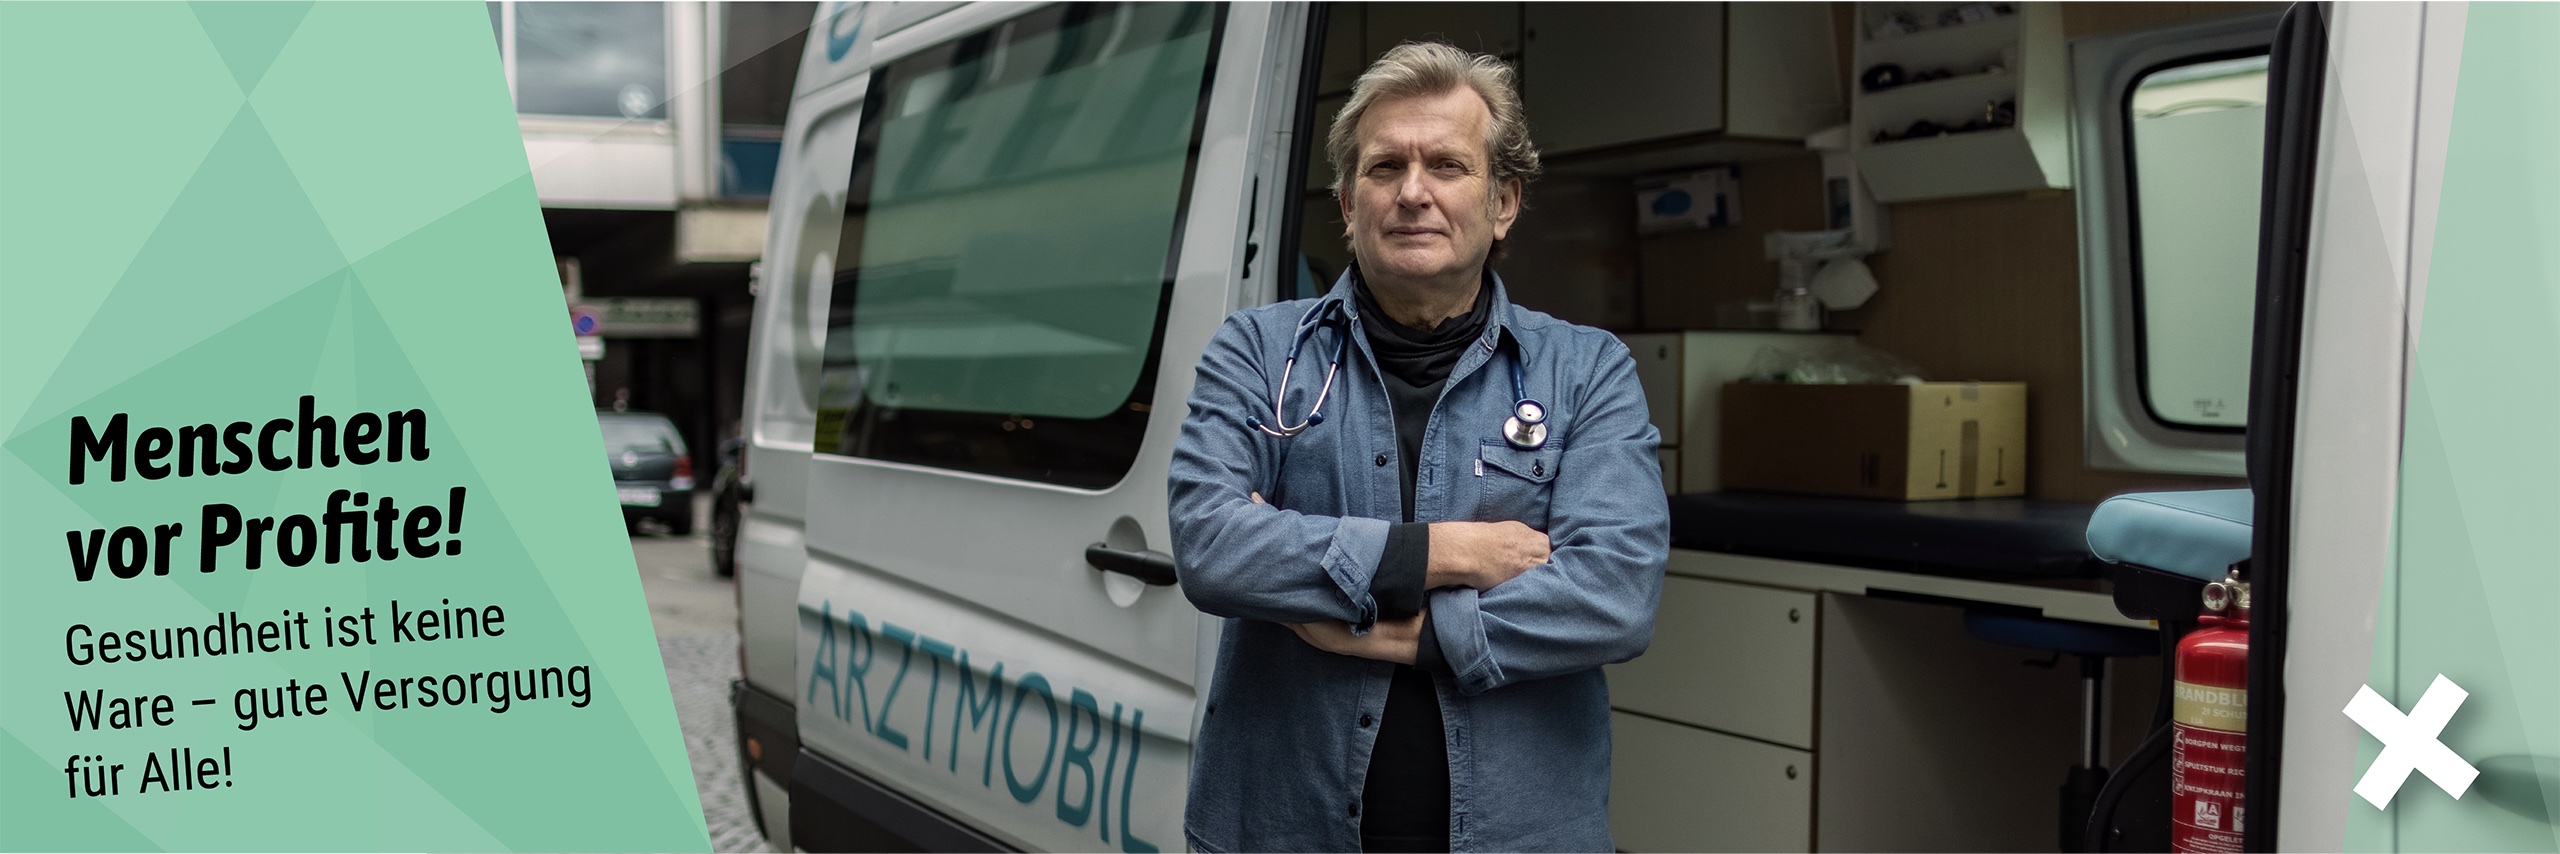 Gerhard Trabert - Gesundheit. Bild mit Trabert vor Arztmobil und dem Claim "Menschen vor Profite!"